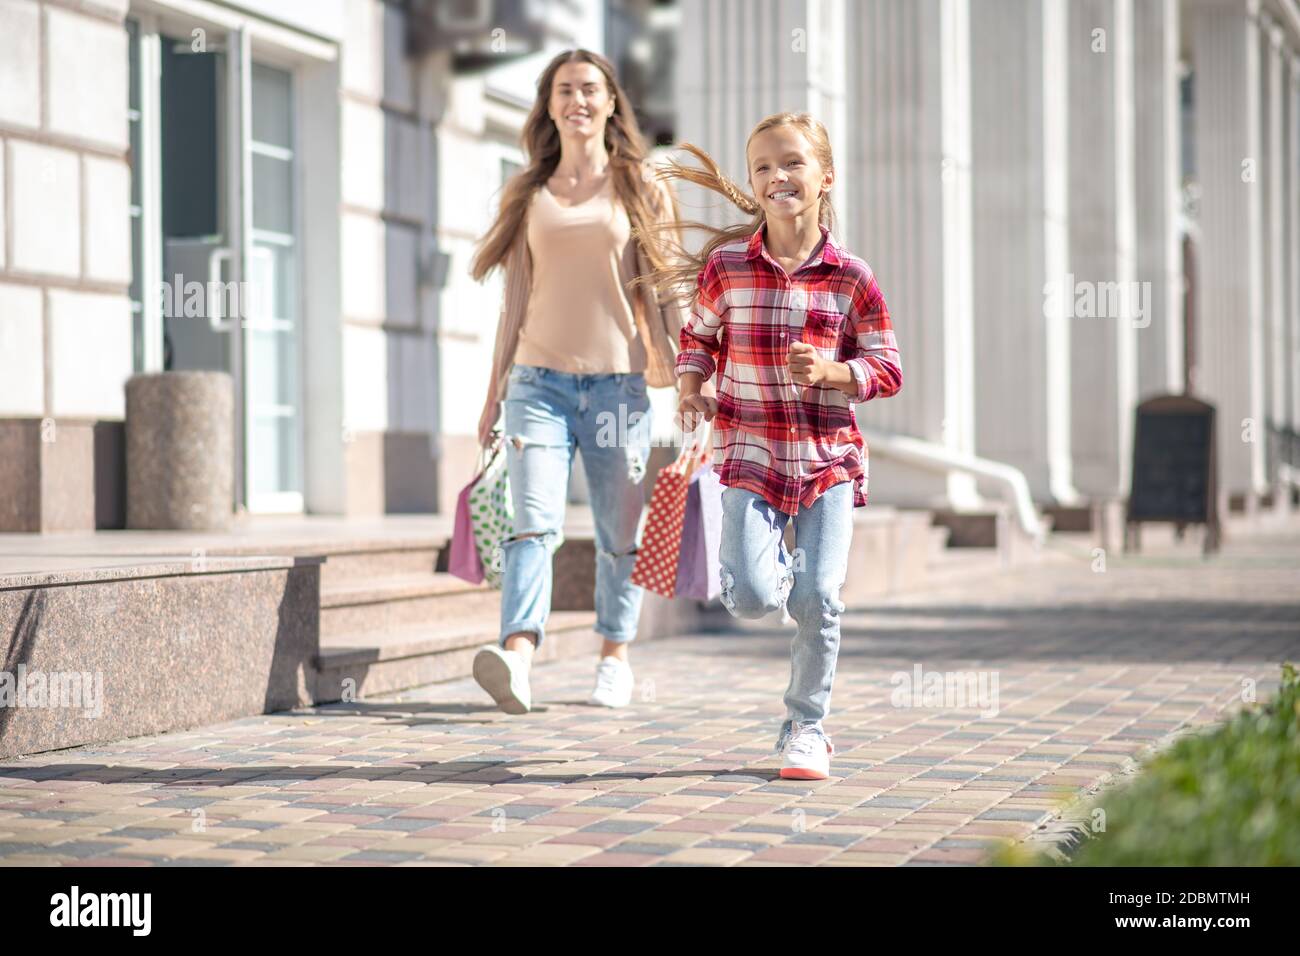 Lächelndes Mädchen mit Einkaufstasche vor ihr laufen Mama draußen Stockfoto